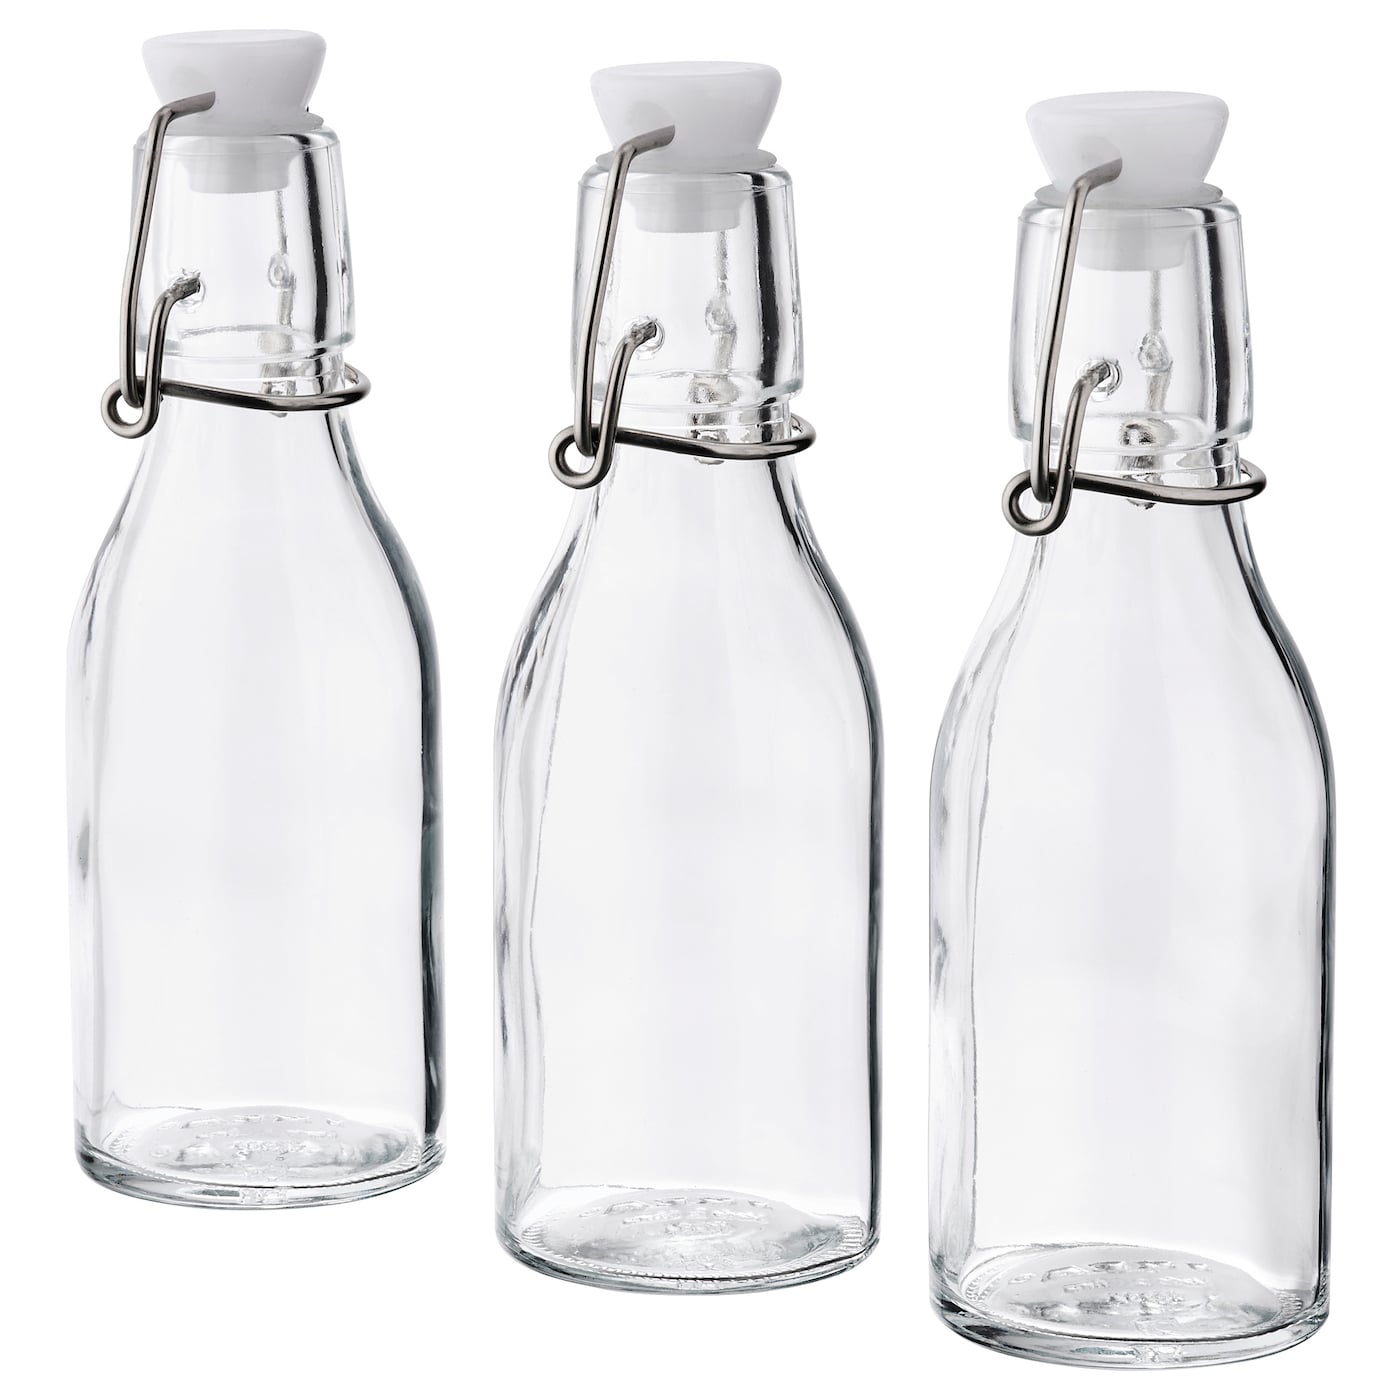 Бутылка с крышкой, 3 шт. - IKEA KORKEN, 15 см, стекло, КОРКЕН ИКЕА